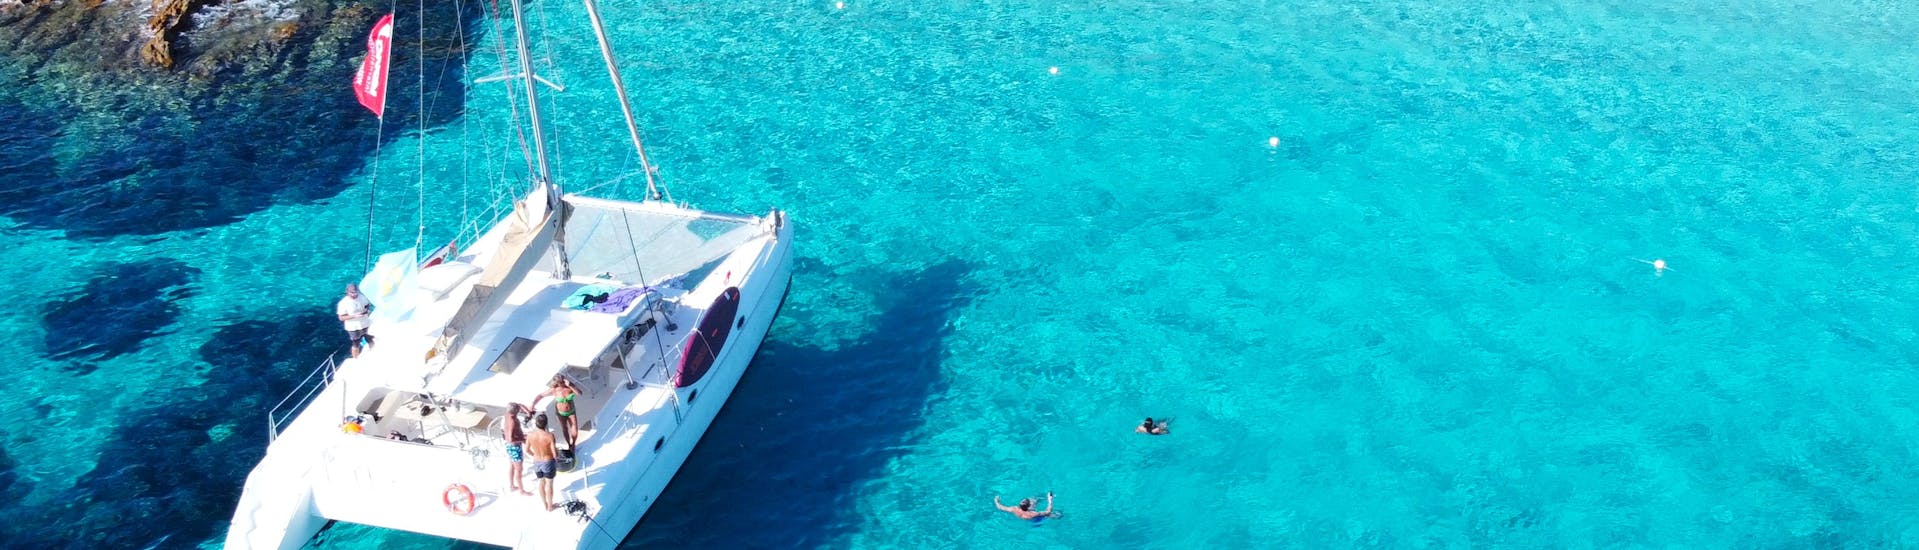 Le catamaran est amarré dans l'archipel de la Maddalena est des usagers se baignent autour